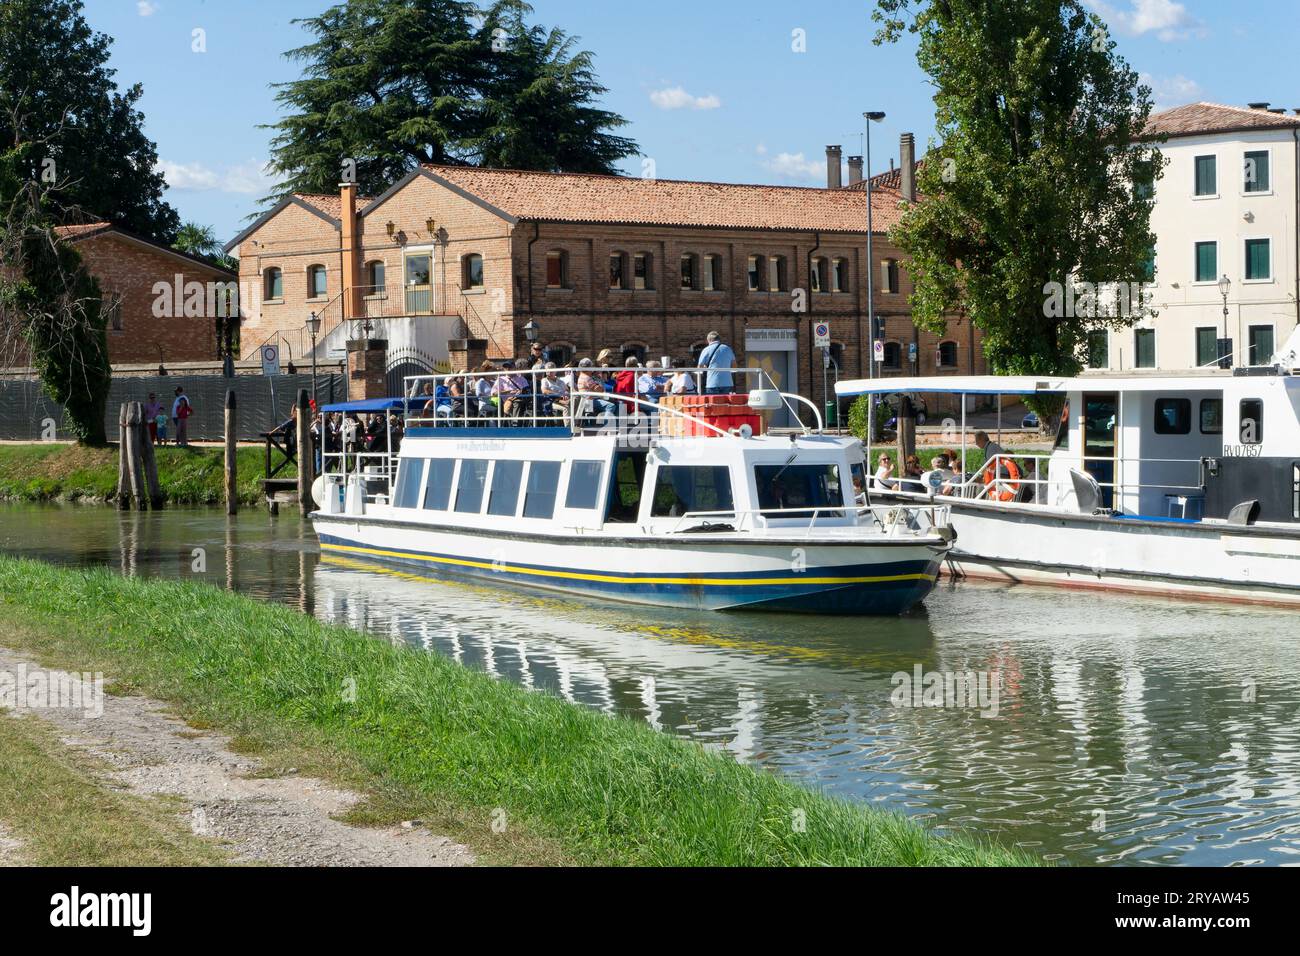 La barca turistica ormeggiata sul fiume Brenta nella città di Dolo sta imbarcando i turisti per una navigazione con destinazione Venezia in Italia Foto Stock